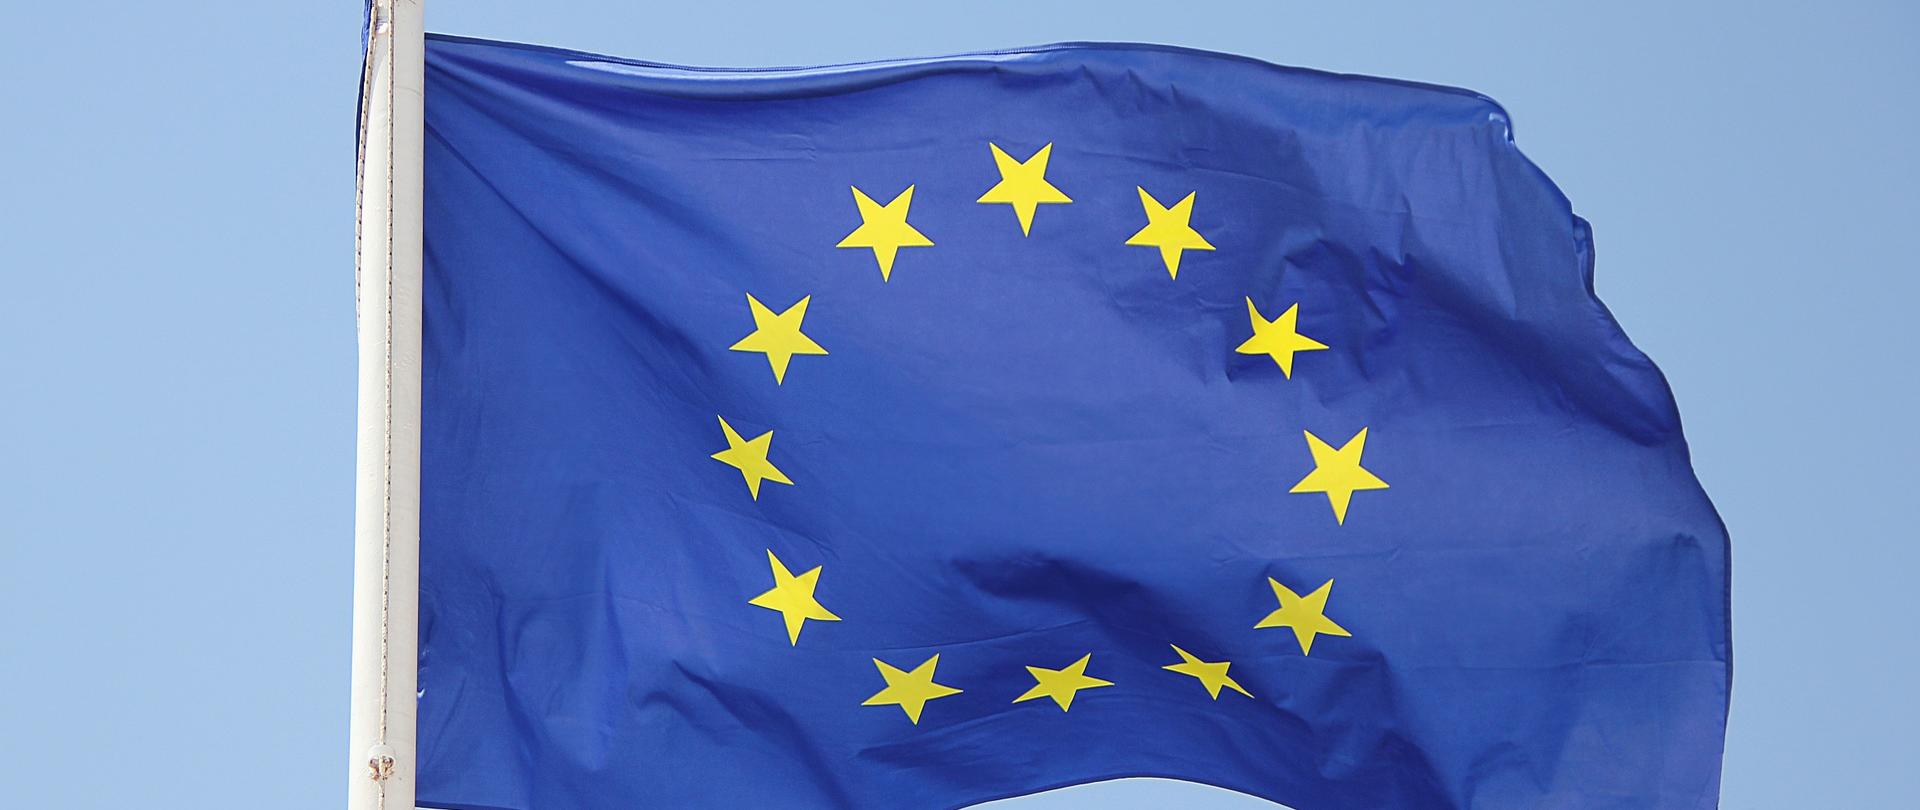 Zdjęcie przedstawia flagę Unii Europejskiej - 12 złotych gwiazd na granatowym tle